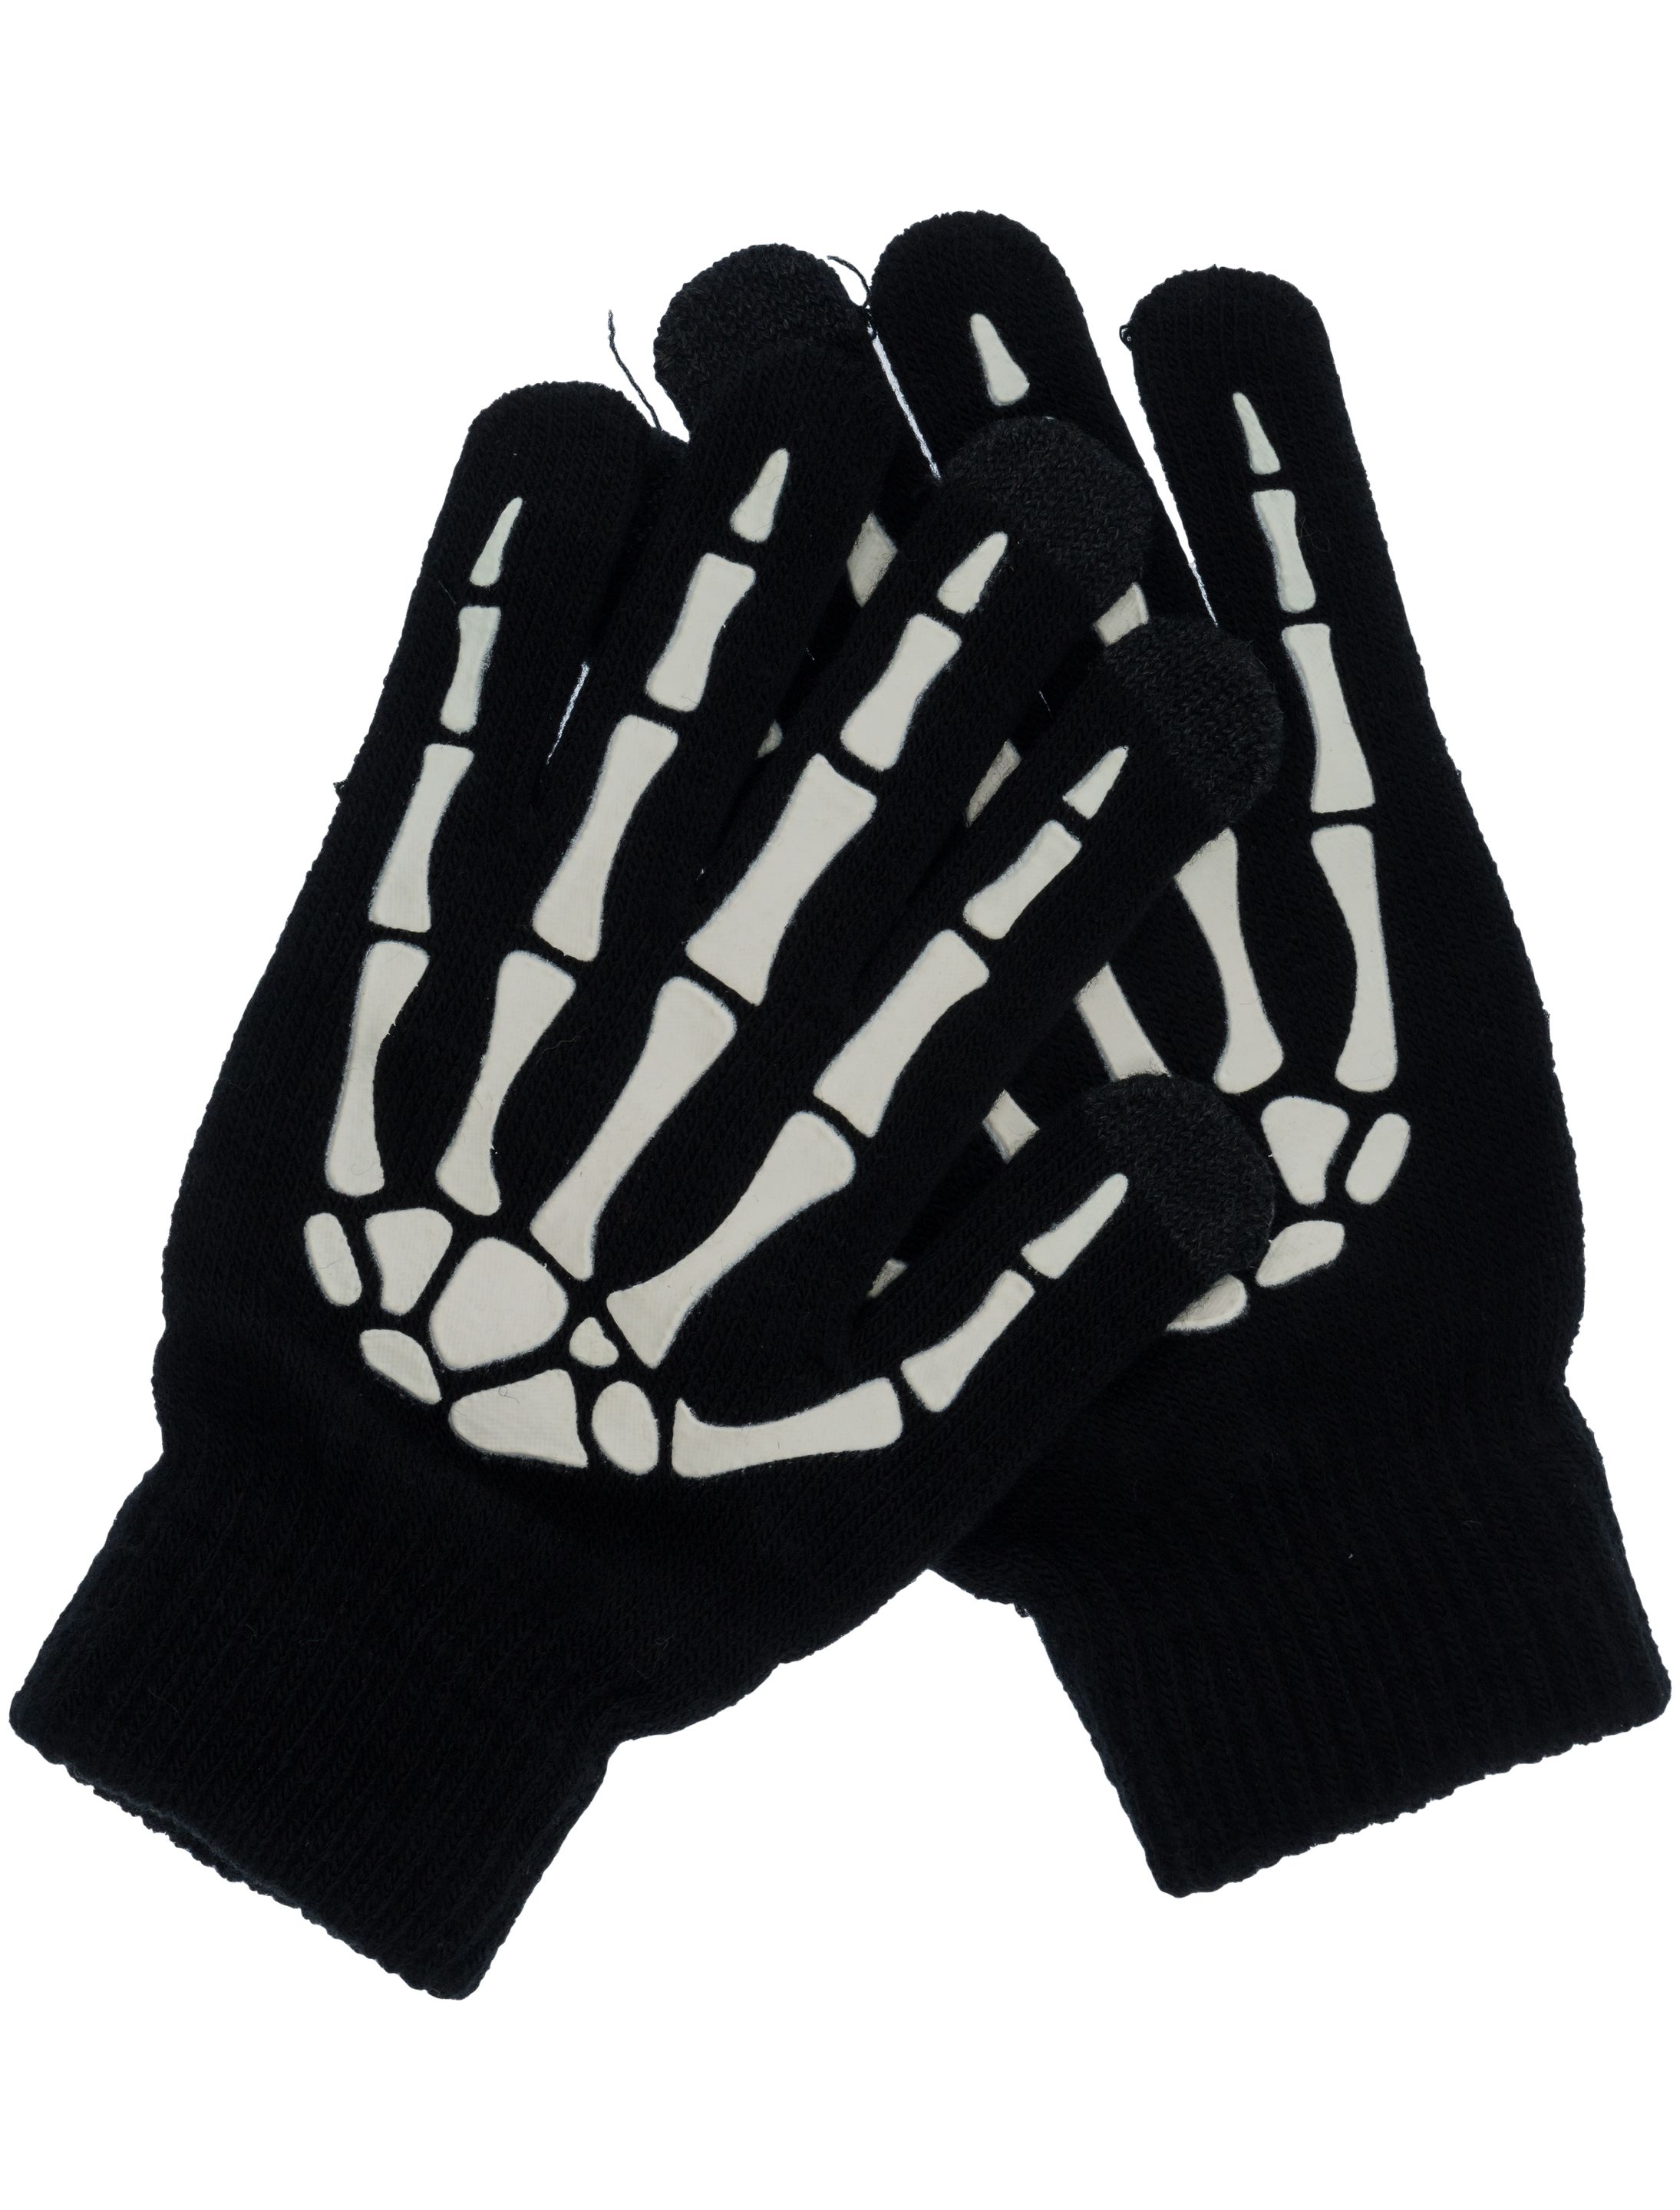 Handschuhe Skelett Erwachsene